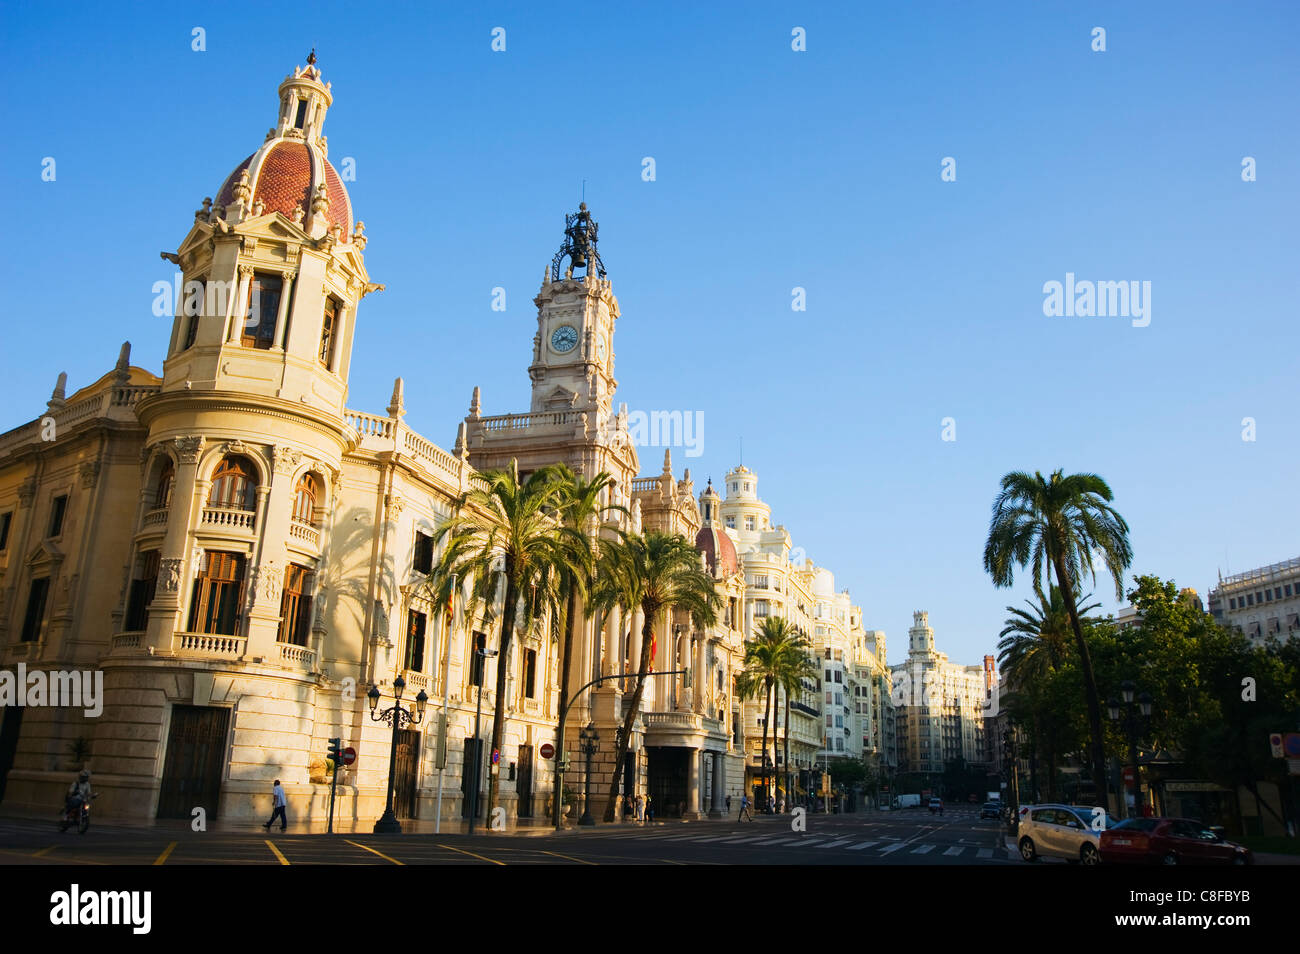 City centre, Valencia, Spain Stock Photo